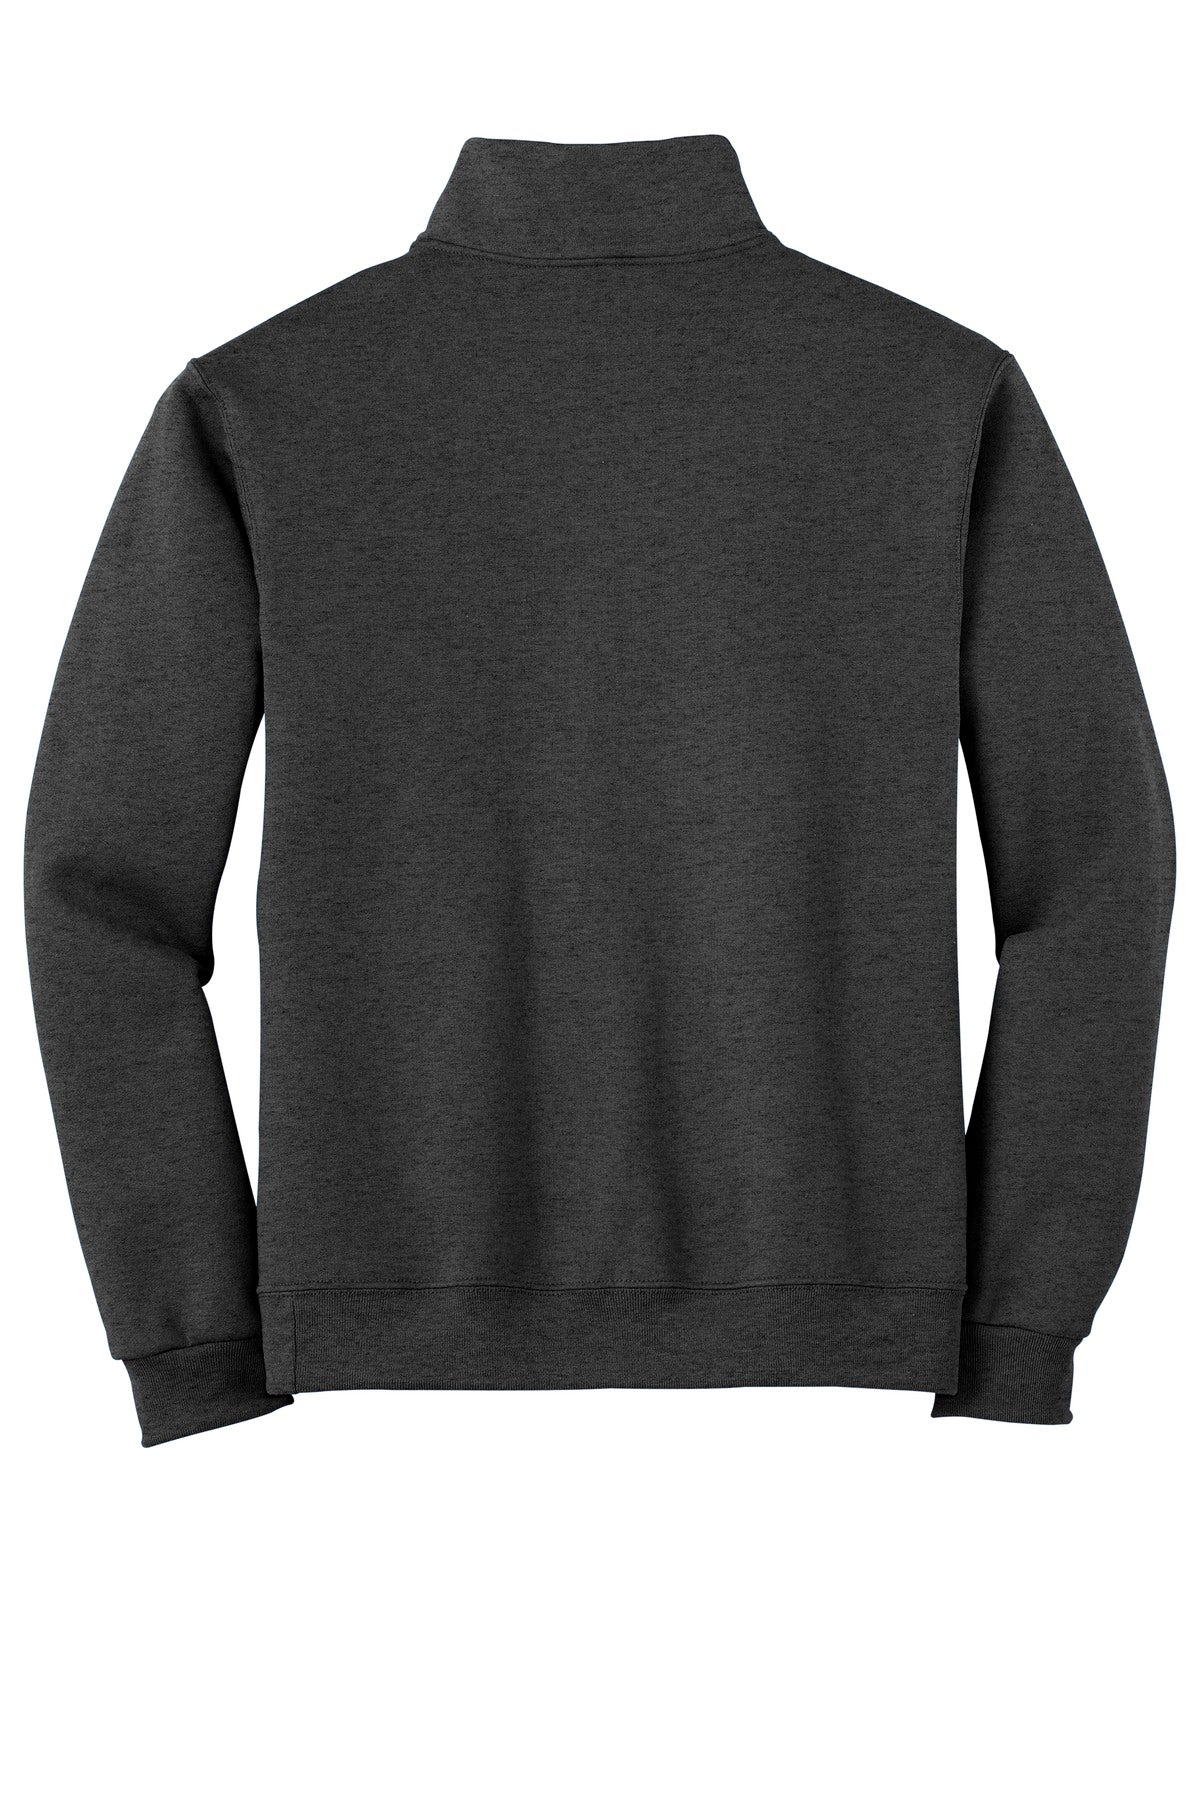 Jerzees - NuBlend 1/4-Zip Cadet Collar Sweatshirt. 995M